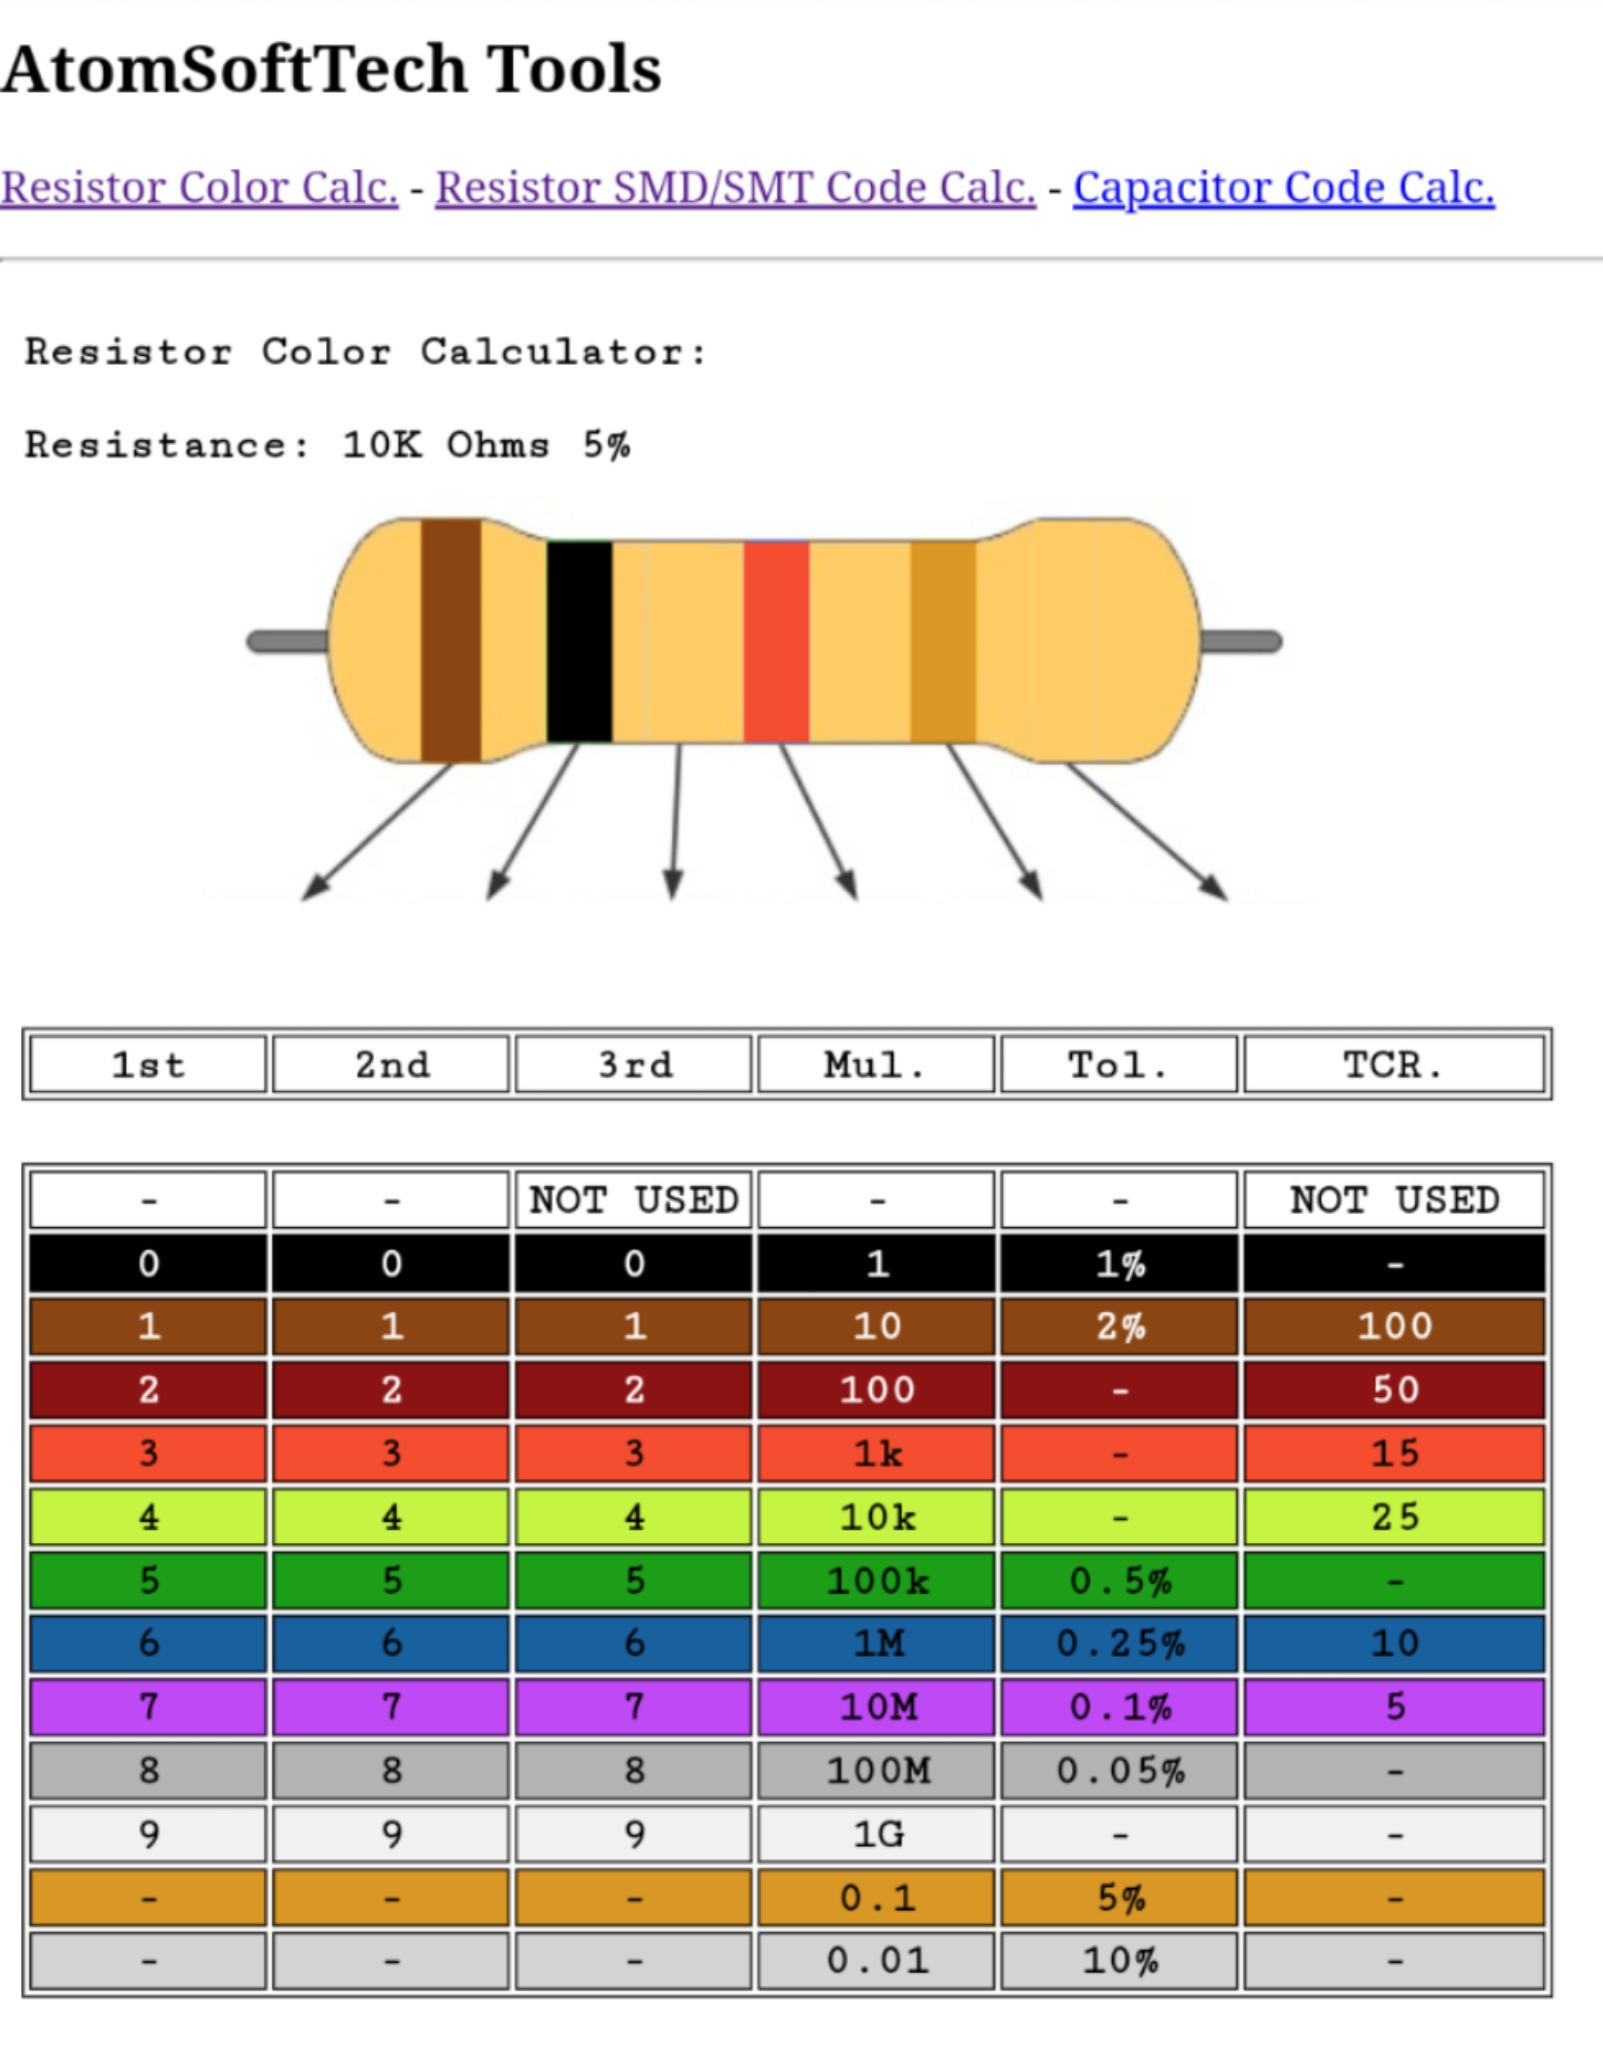 Резистор смд маркировка калькулятор. 510 Ом резистор цветовая маркировка. Цветовая маркировка резисторов 4 полосы. Цветовая маркировка резисторов 5 полос. Цветовая маркировка резисторов 6 полос.